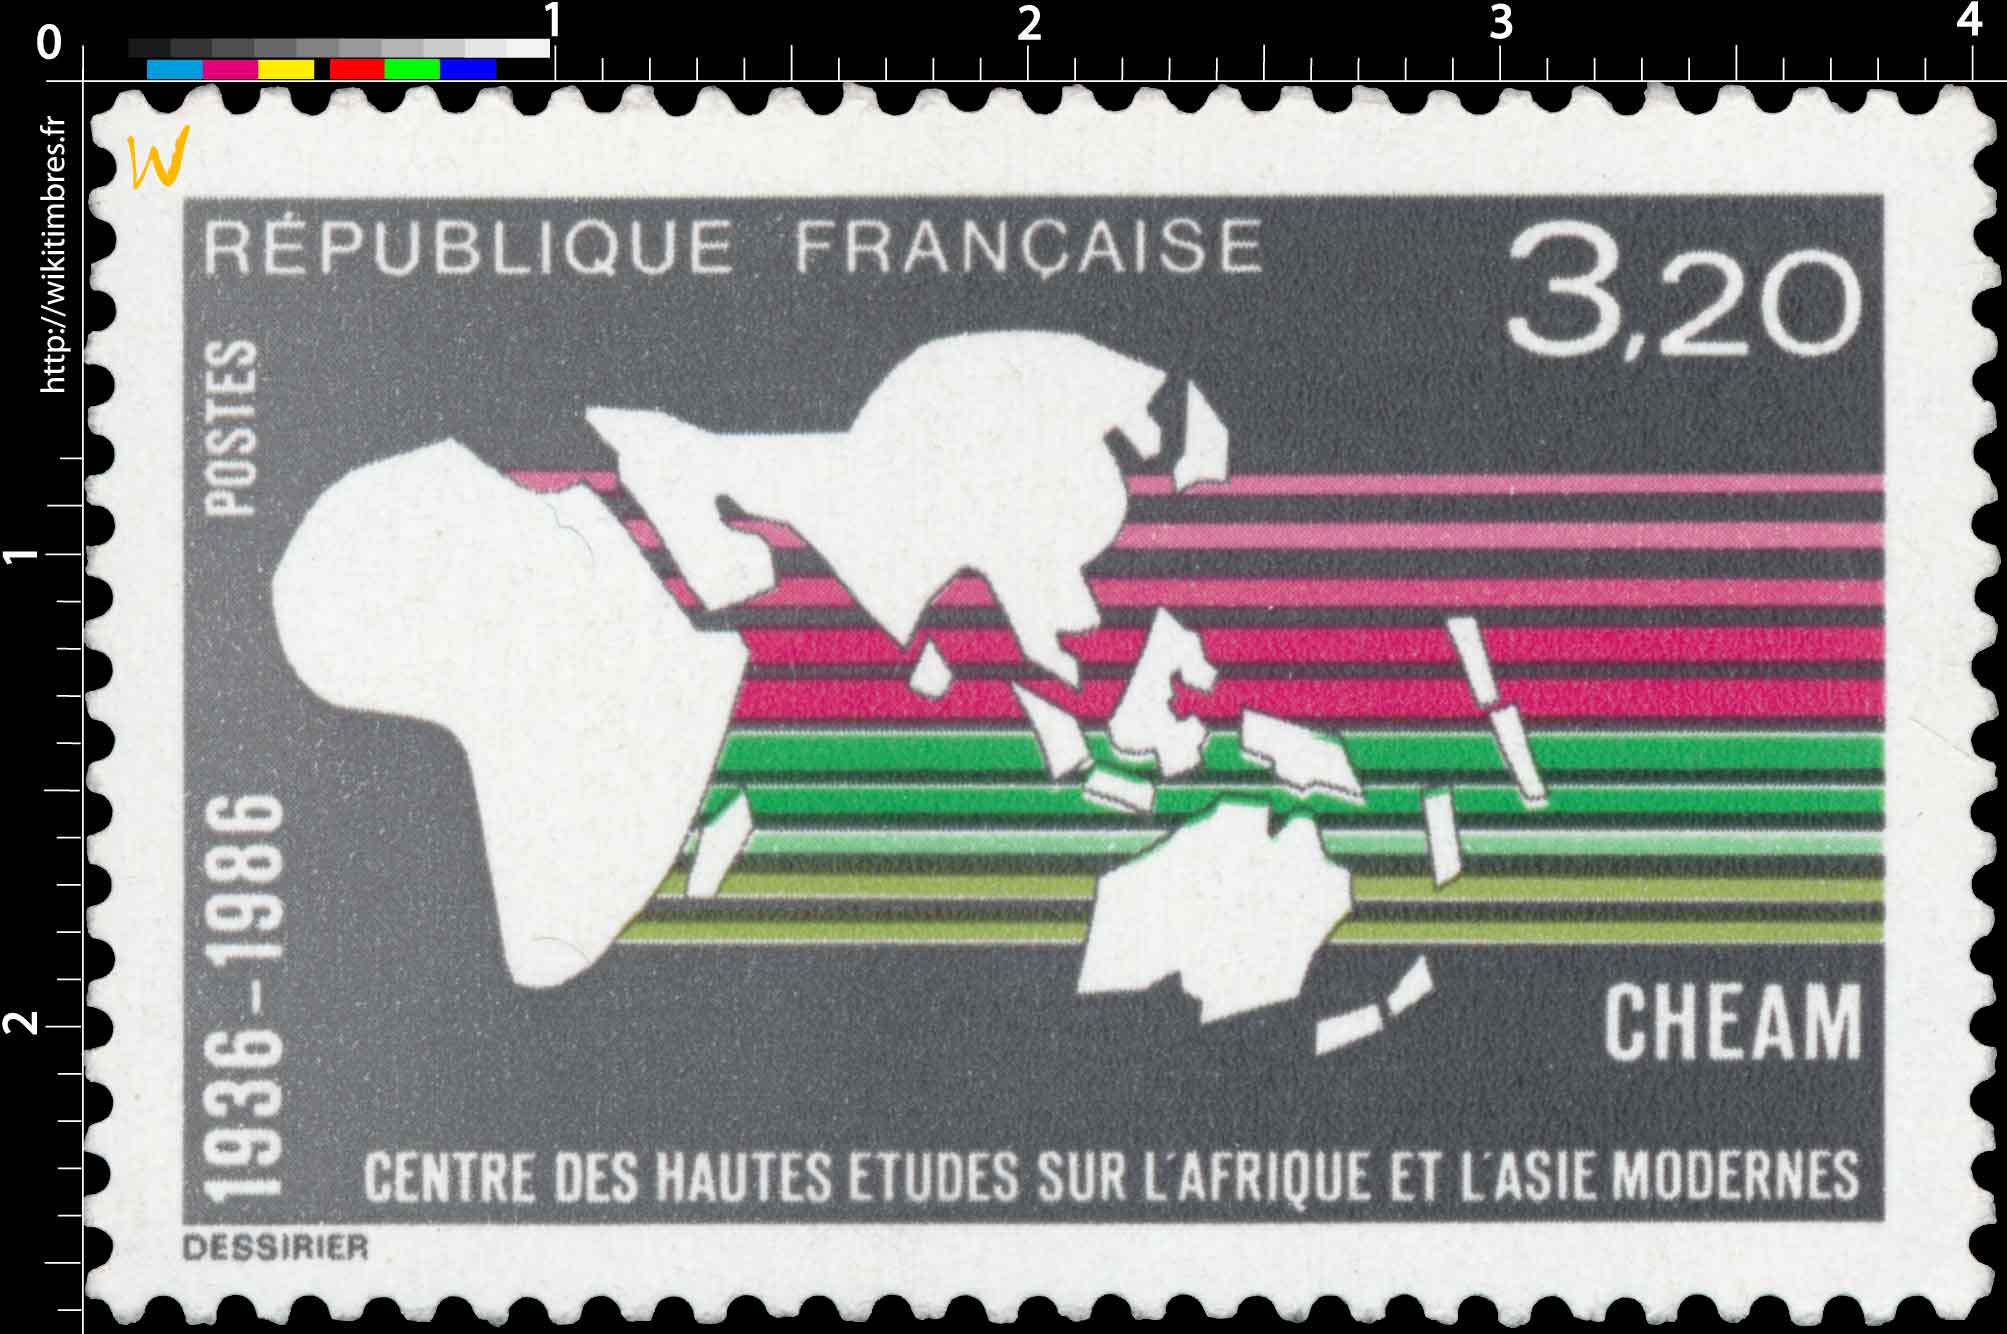 CHEAM CENTRE DES HAUTES ÉTUDES SUR L'AFRIQUE ET L'ASIE MODERNES 1936-1986